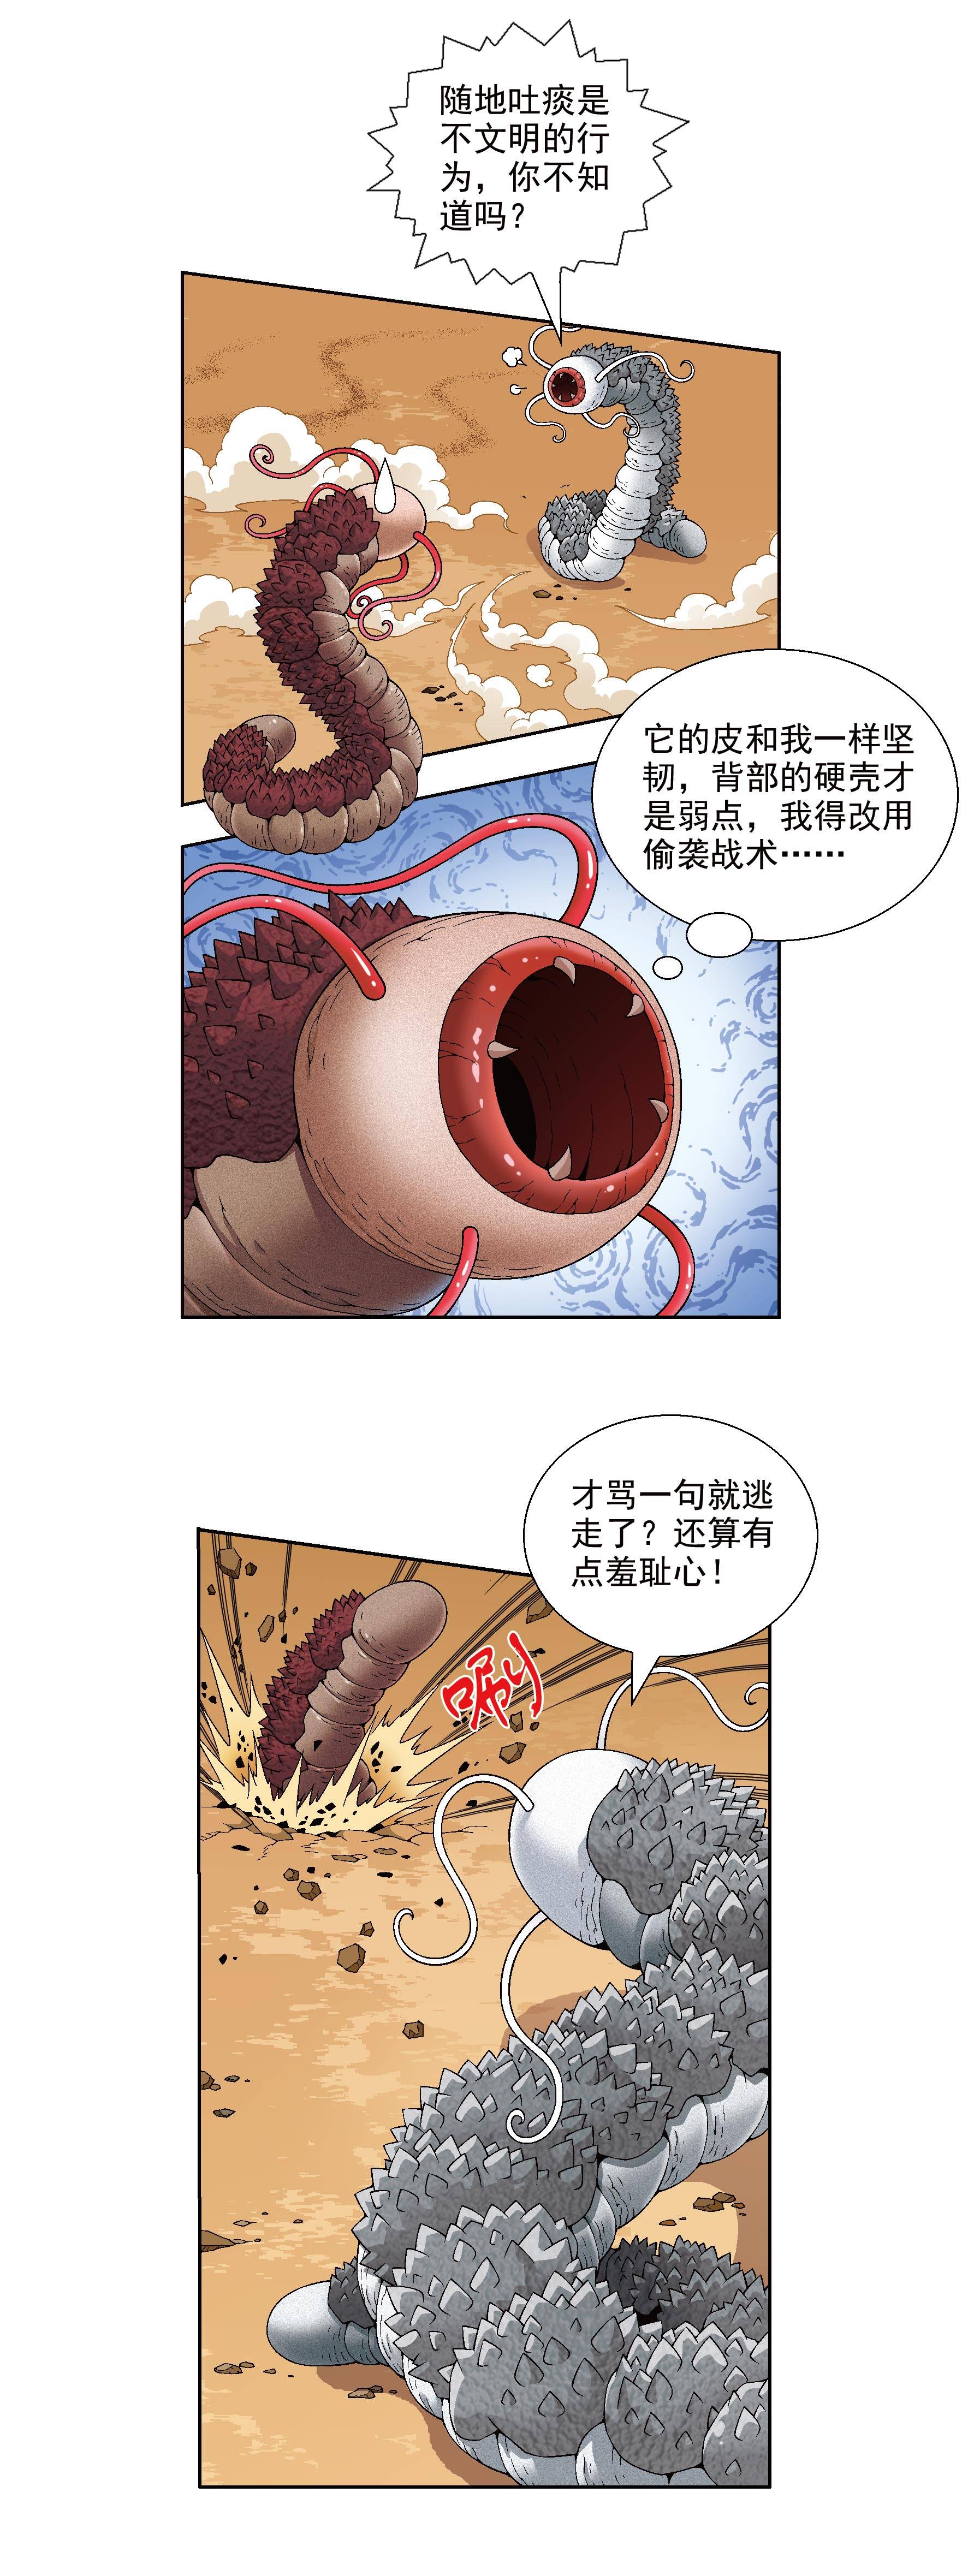 【漫画连载】恐龙世界寻宝记二 Vol.2_陨石